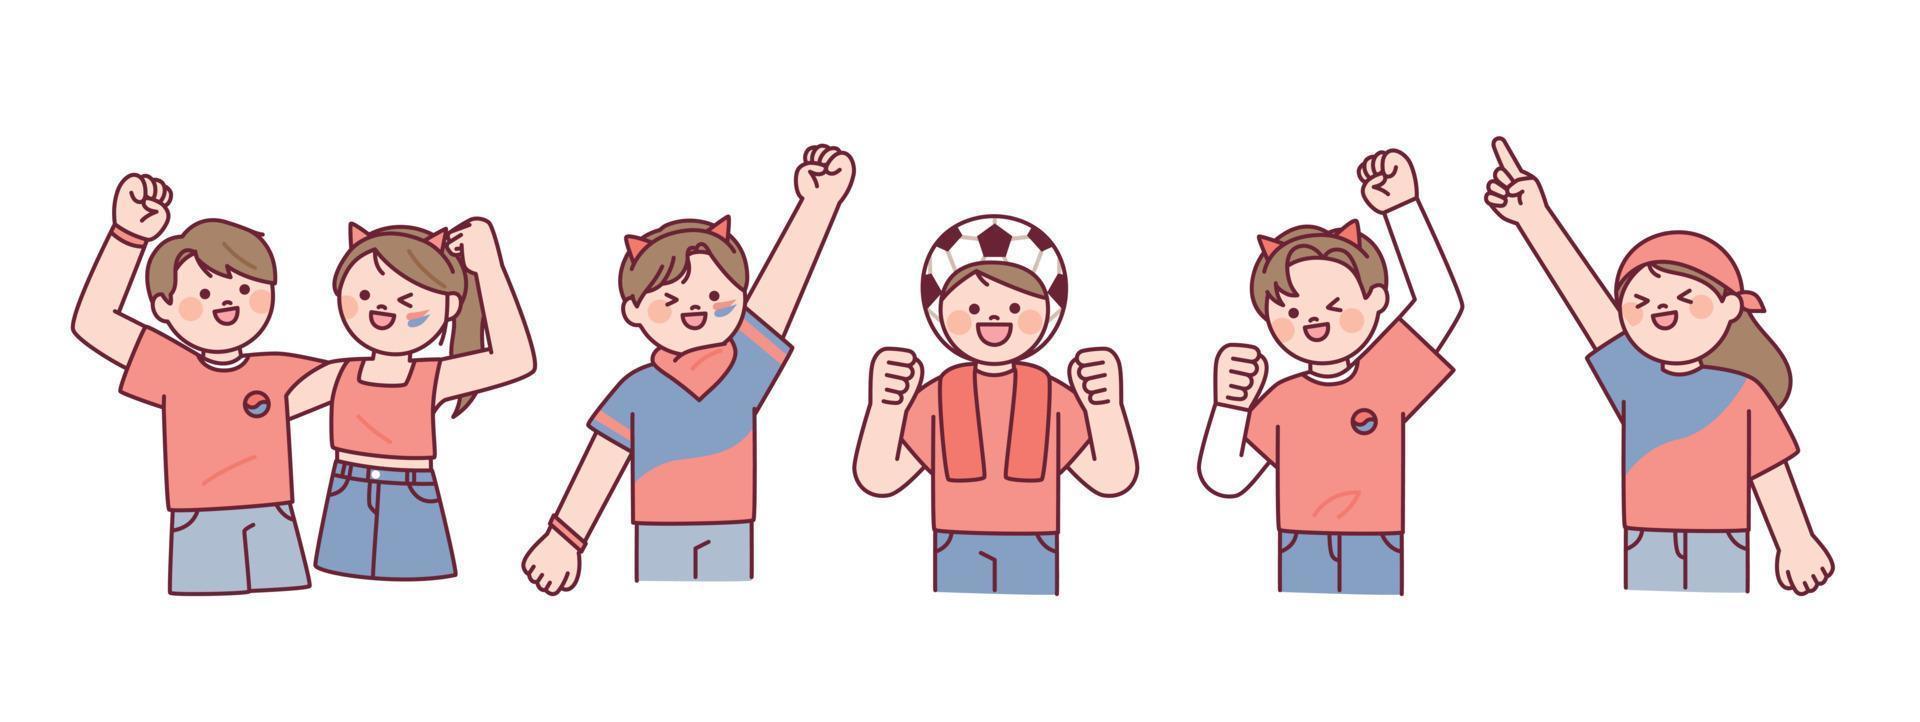 equipo de animadores de fútbol coreano diablos rojos. la gente con camisetas rojas está animando con las manos en alto. vector